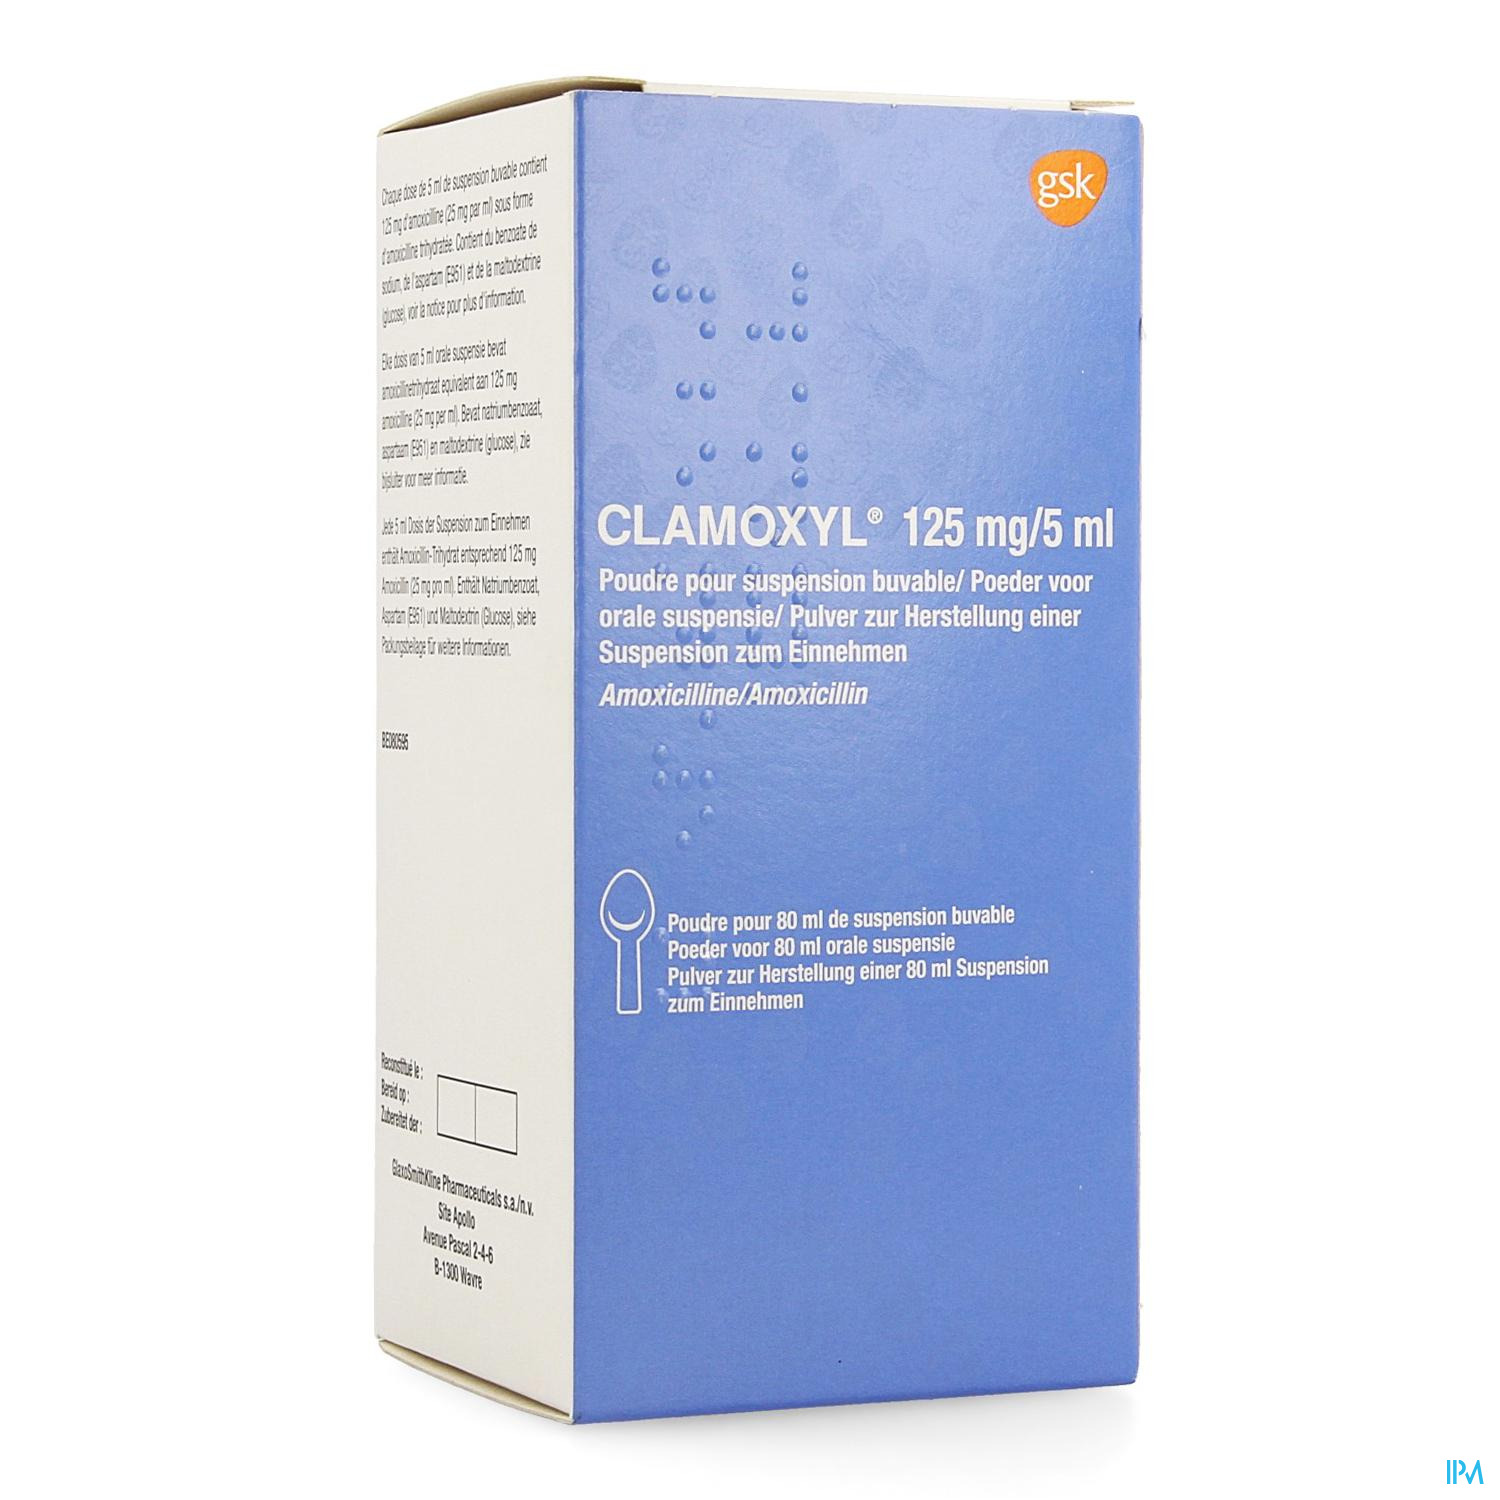 Clamoxyl Sir 1 X 80ml 125mg/5ml